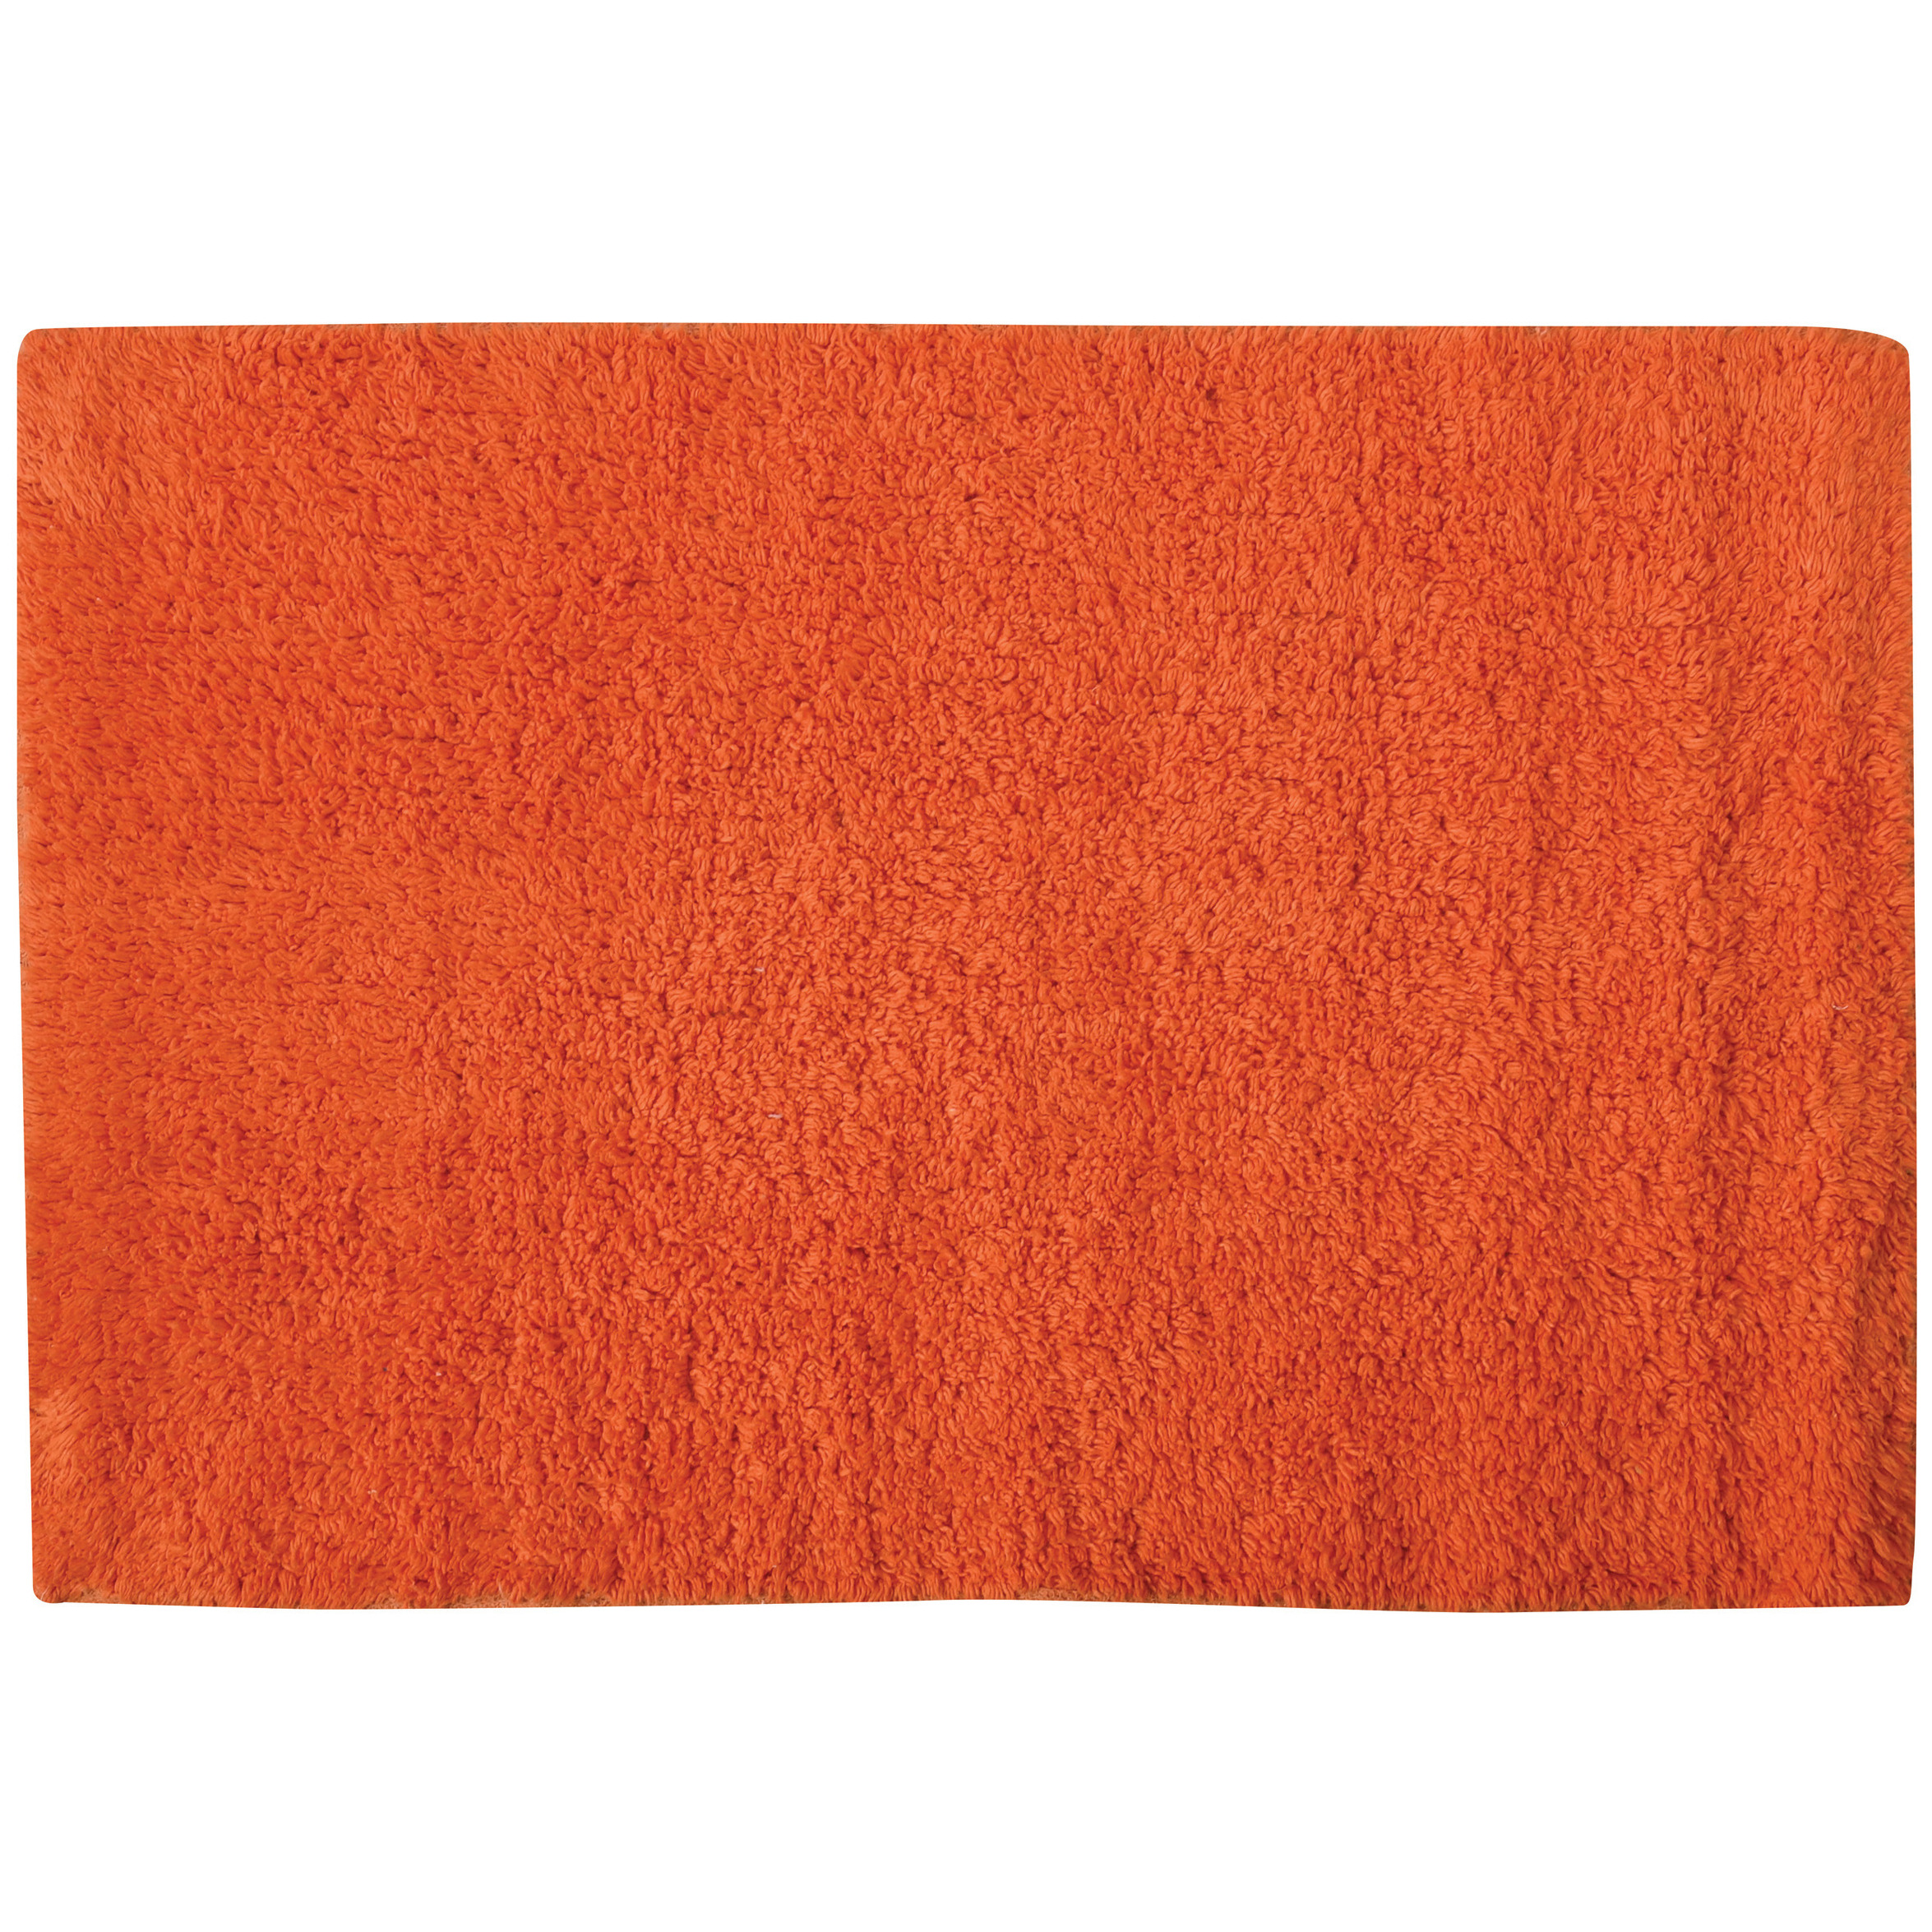 Badkamerkleedje-badmat voor op de vloer oranje 45 x 70 cm